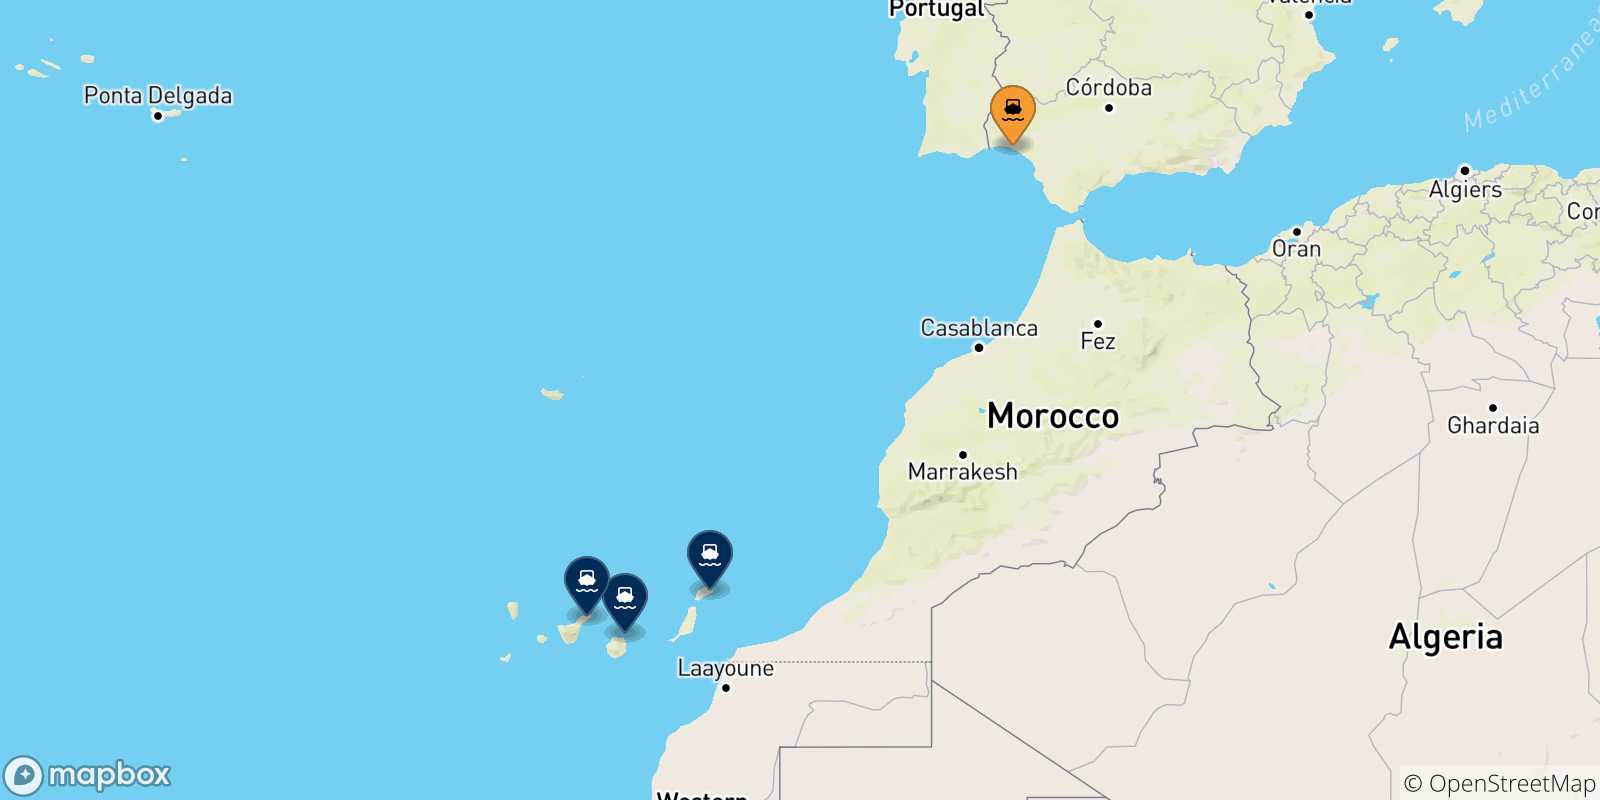 Mappa delle possibili rotte tra Huelva e la Spagna